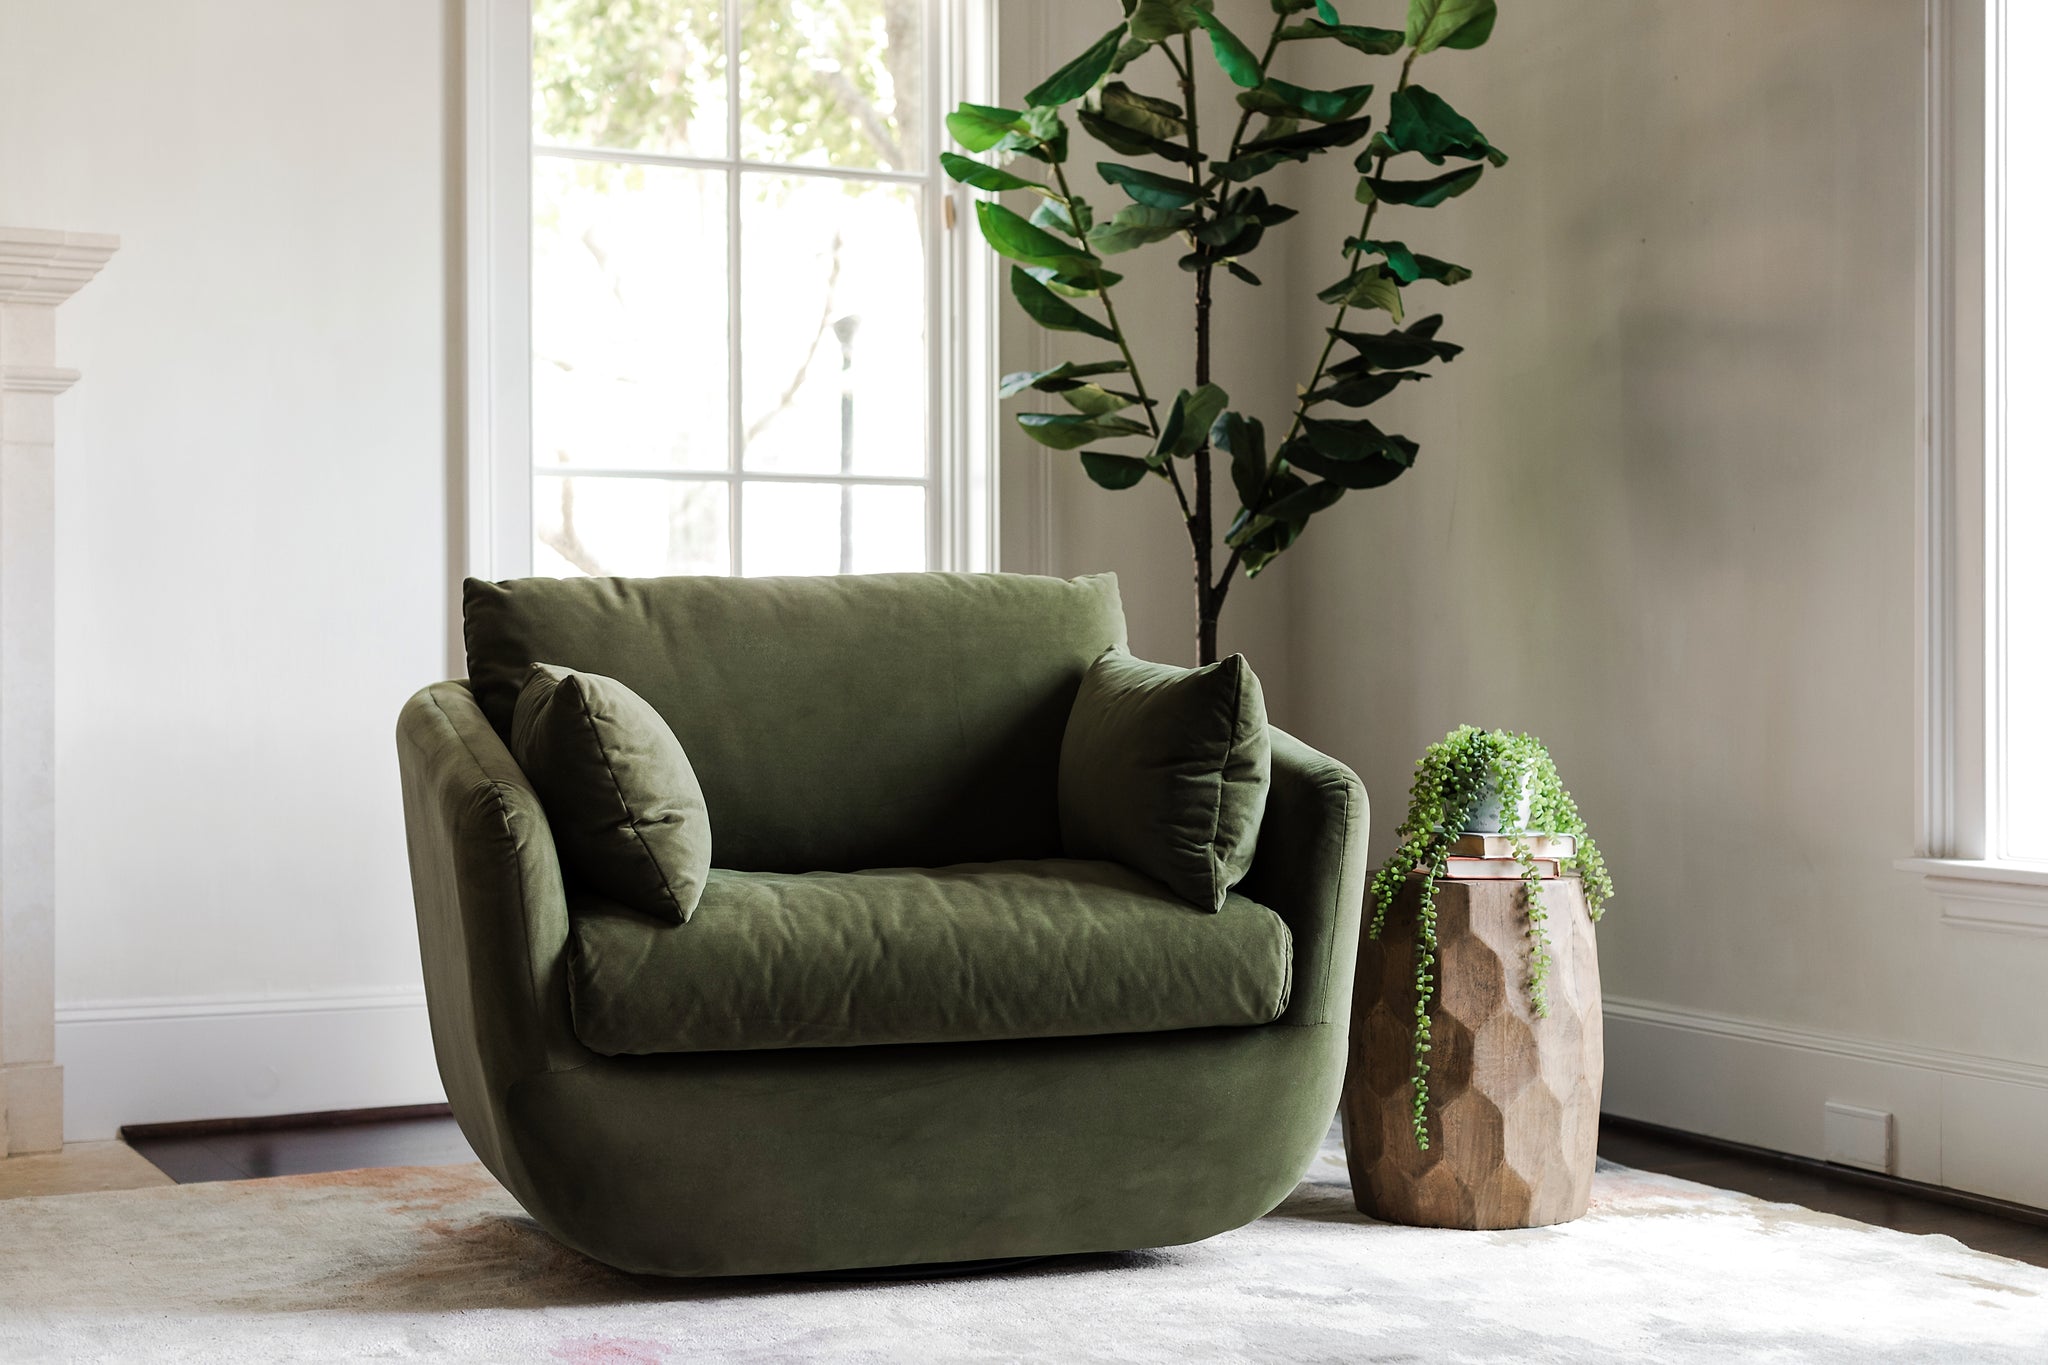 park swivel armchair in olive velvet in a living room setting